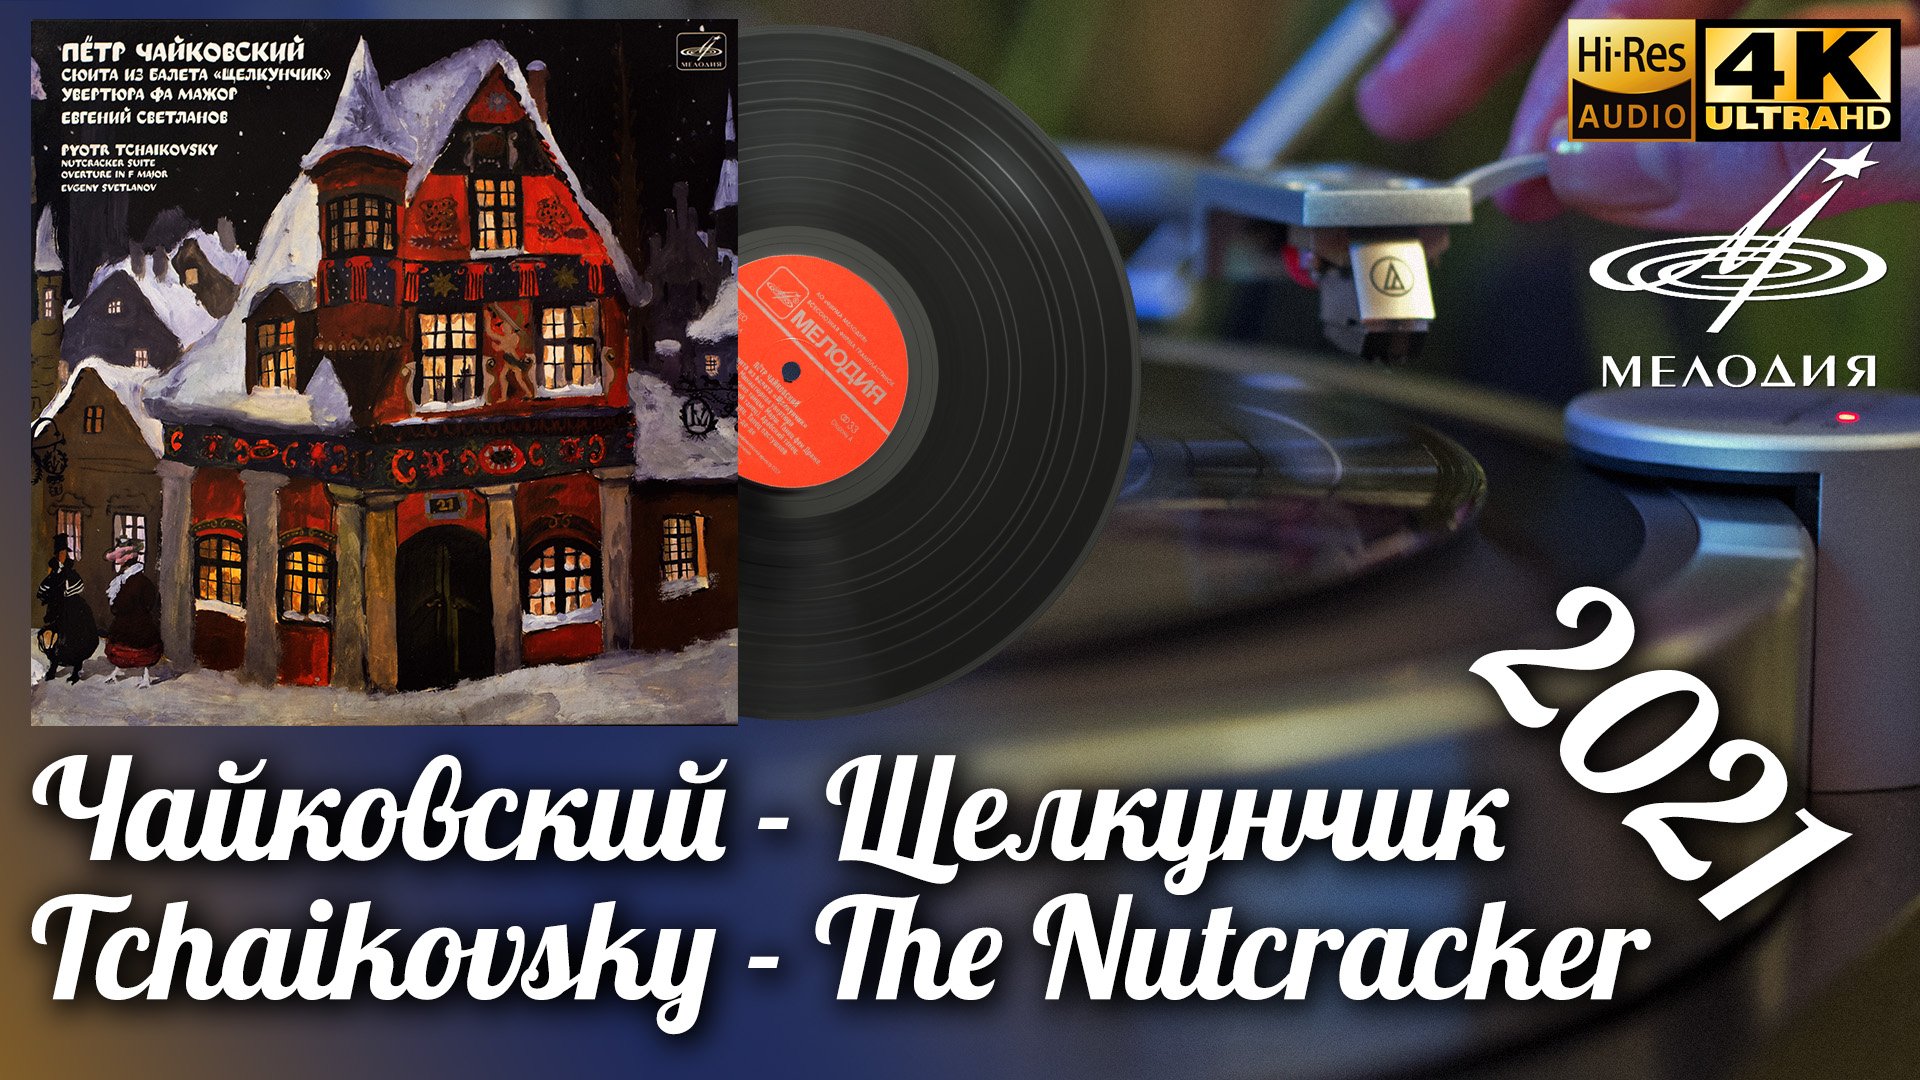 Чайковский - Щелкунчик Дир Светланов / Tchaikovsky - The Nutcracker Suite Vinyl video 4K 24bit/96kHz